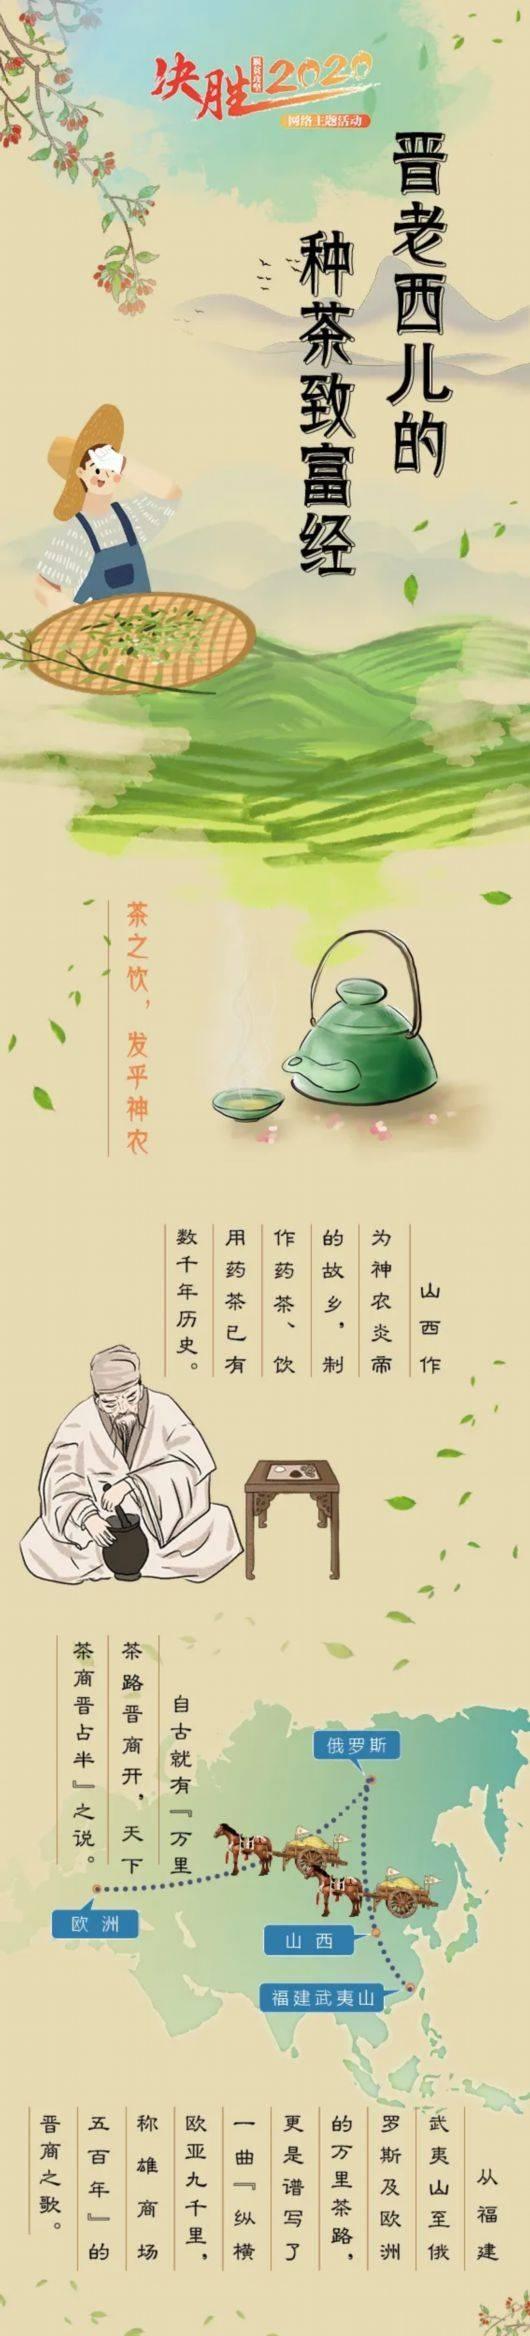 【决胜2020】晋老西儿的种茶致富经